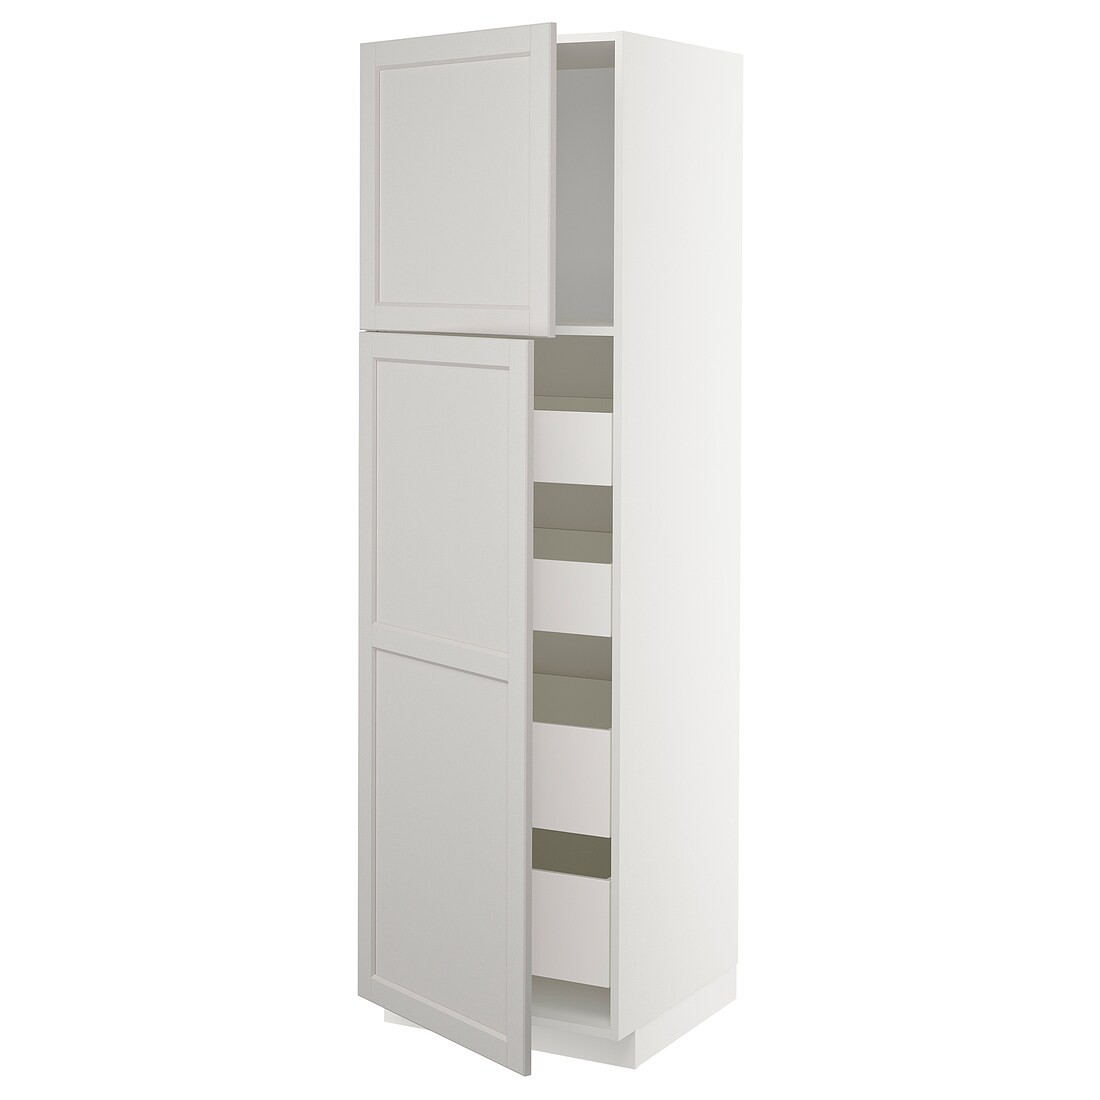 METOD МЕТОД / MAXIMERA МАКСИМЕРА Шкаф высокий 2 двери / 4 ящика, белый / Lerhyttan светло-серый, 60x60x200 см